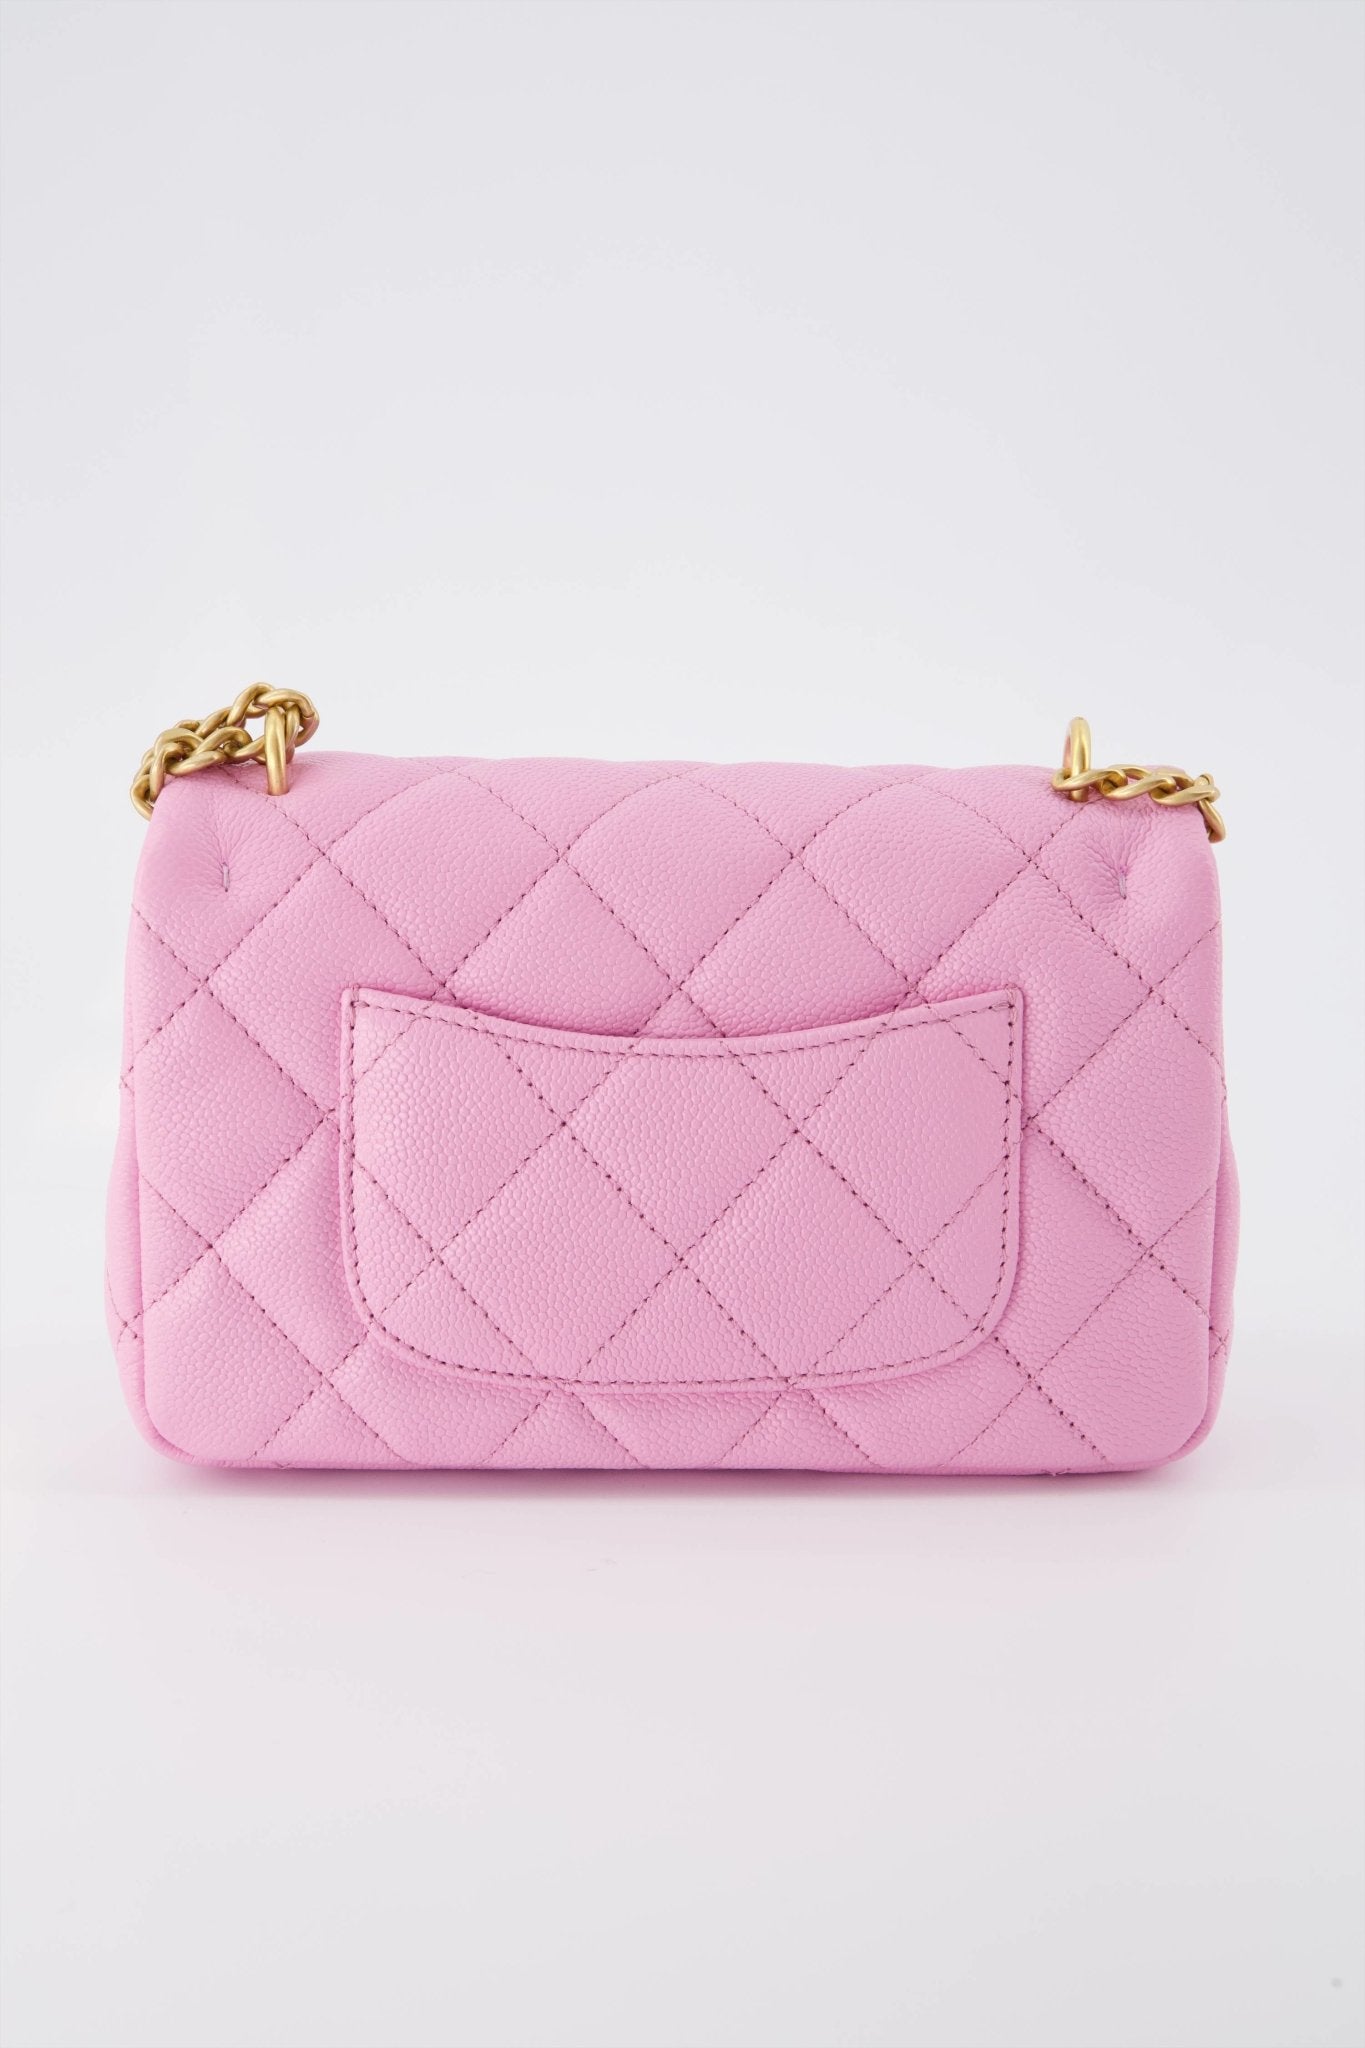 Chanel Bag Illustrations, Chanel pink flap bag illustration